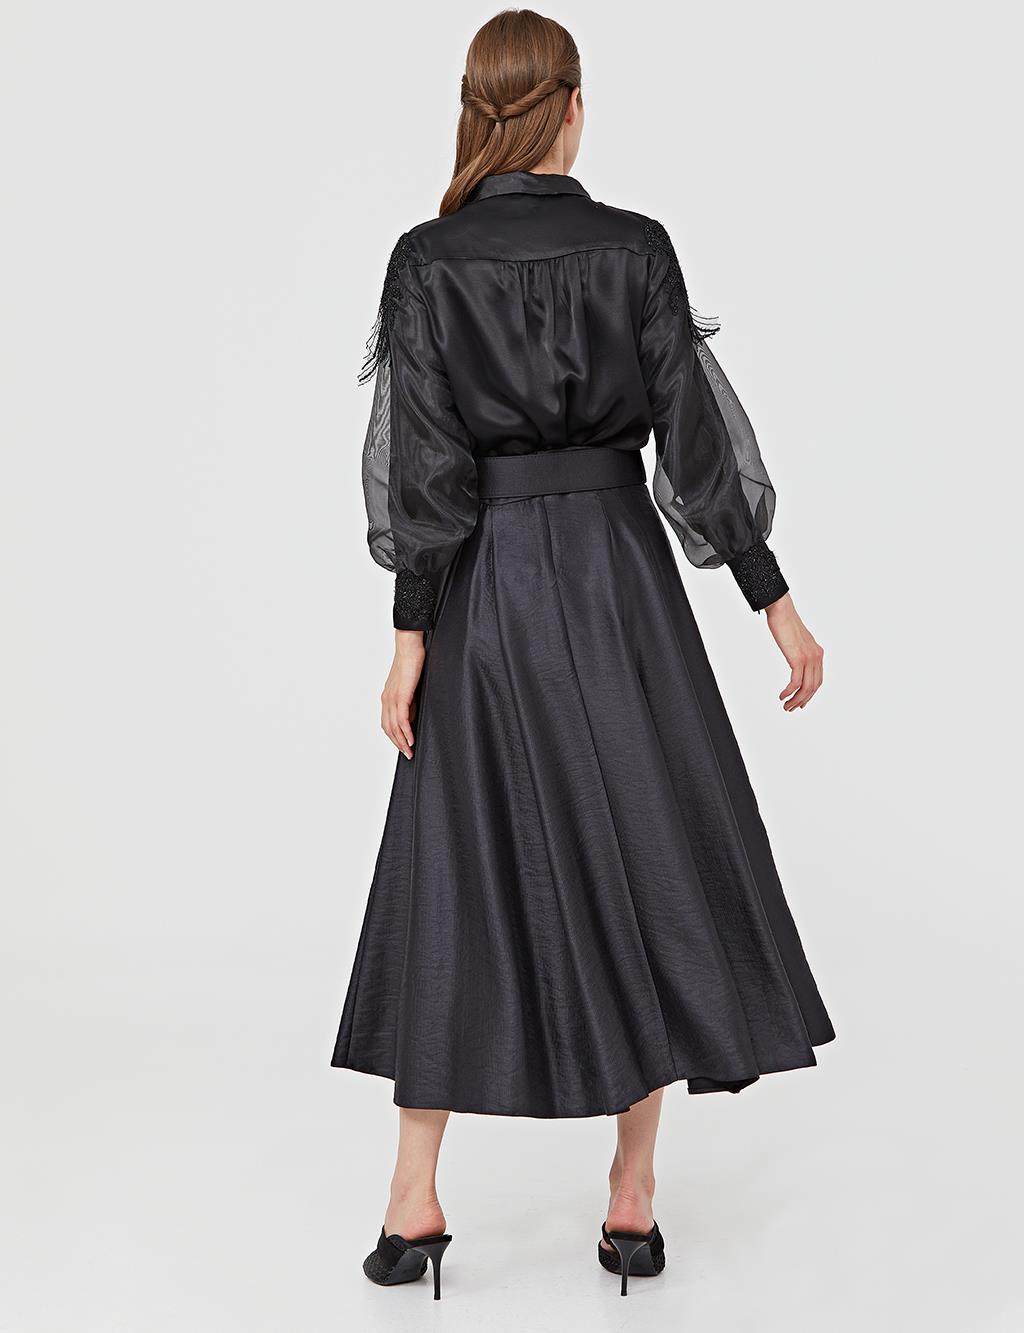 High Waist A-line Skirt A21 12004 Black